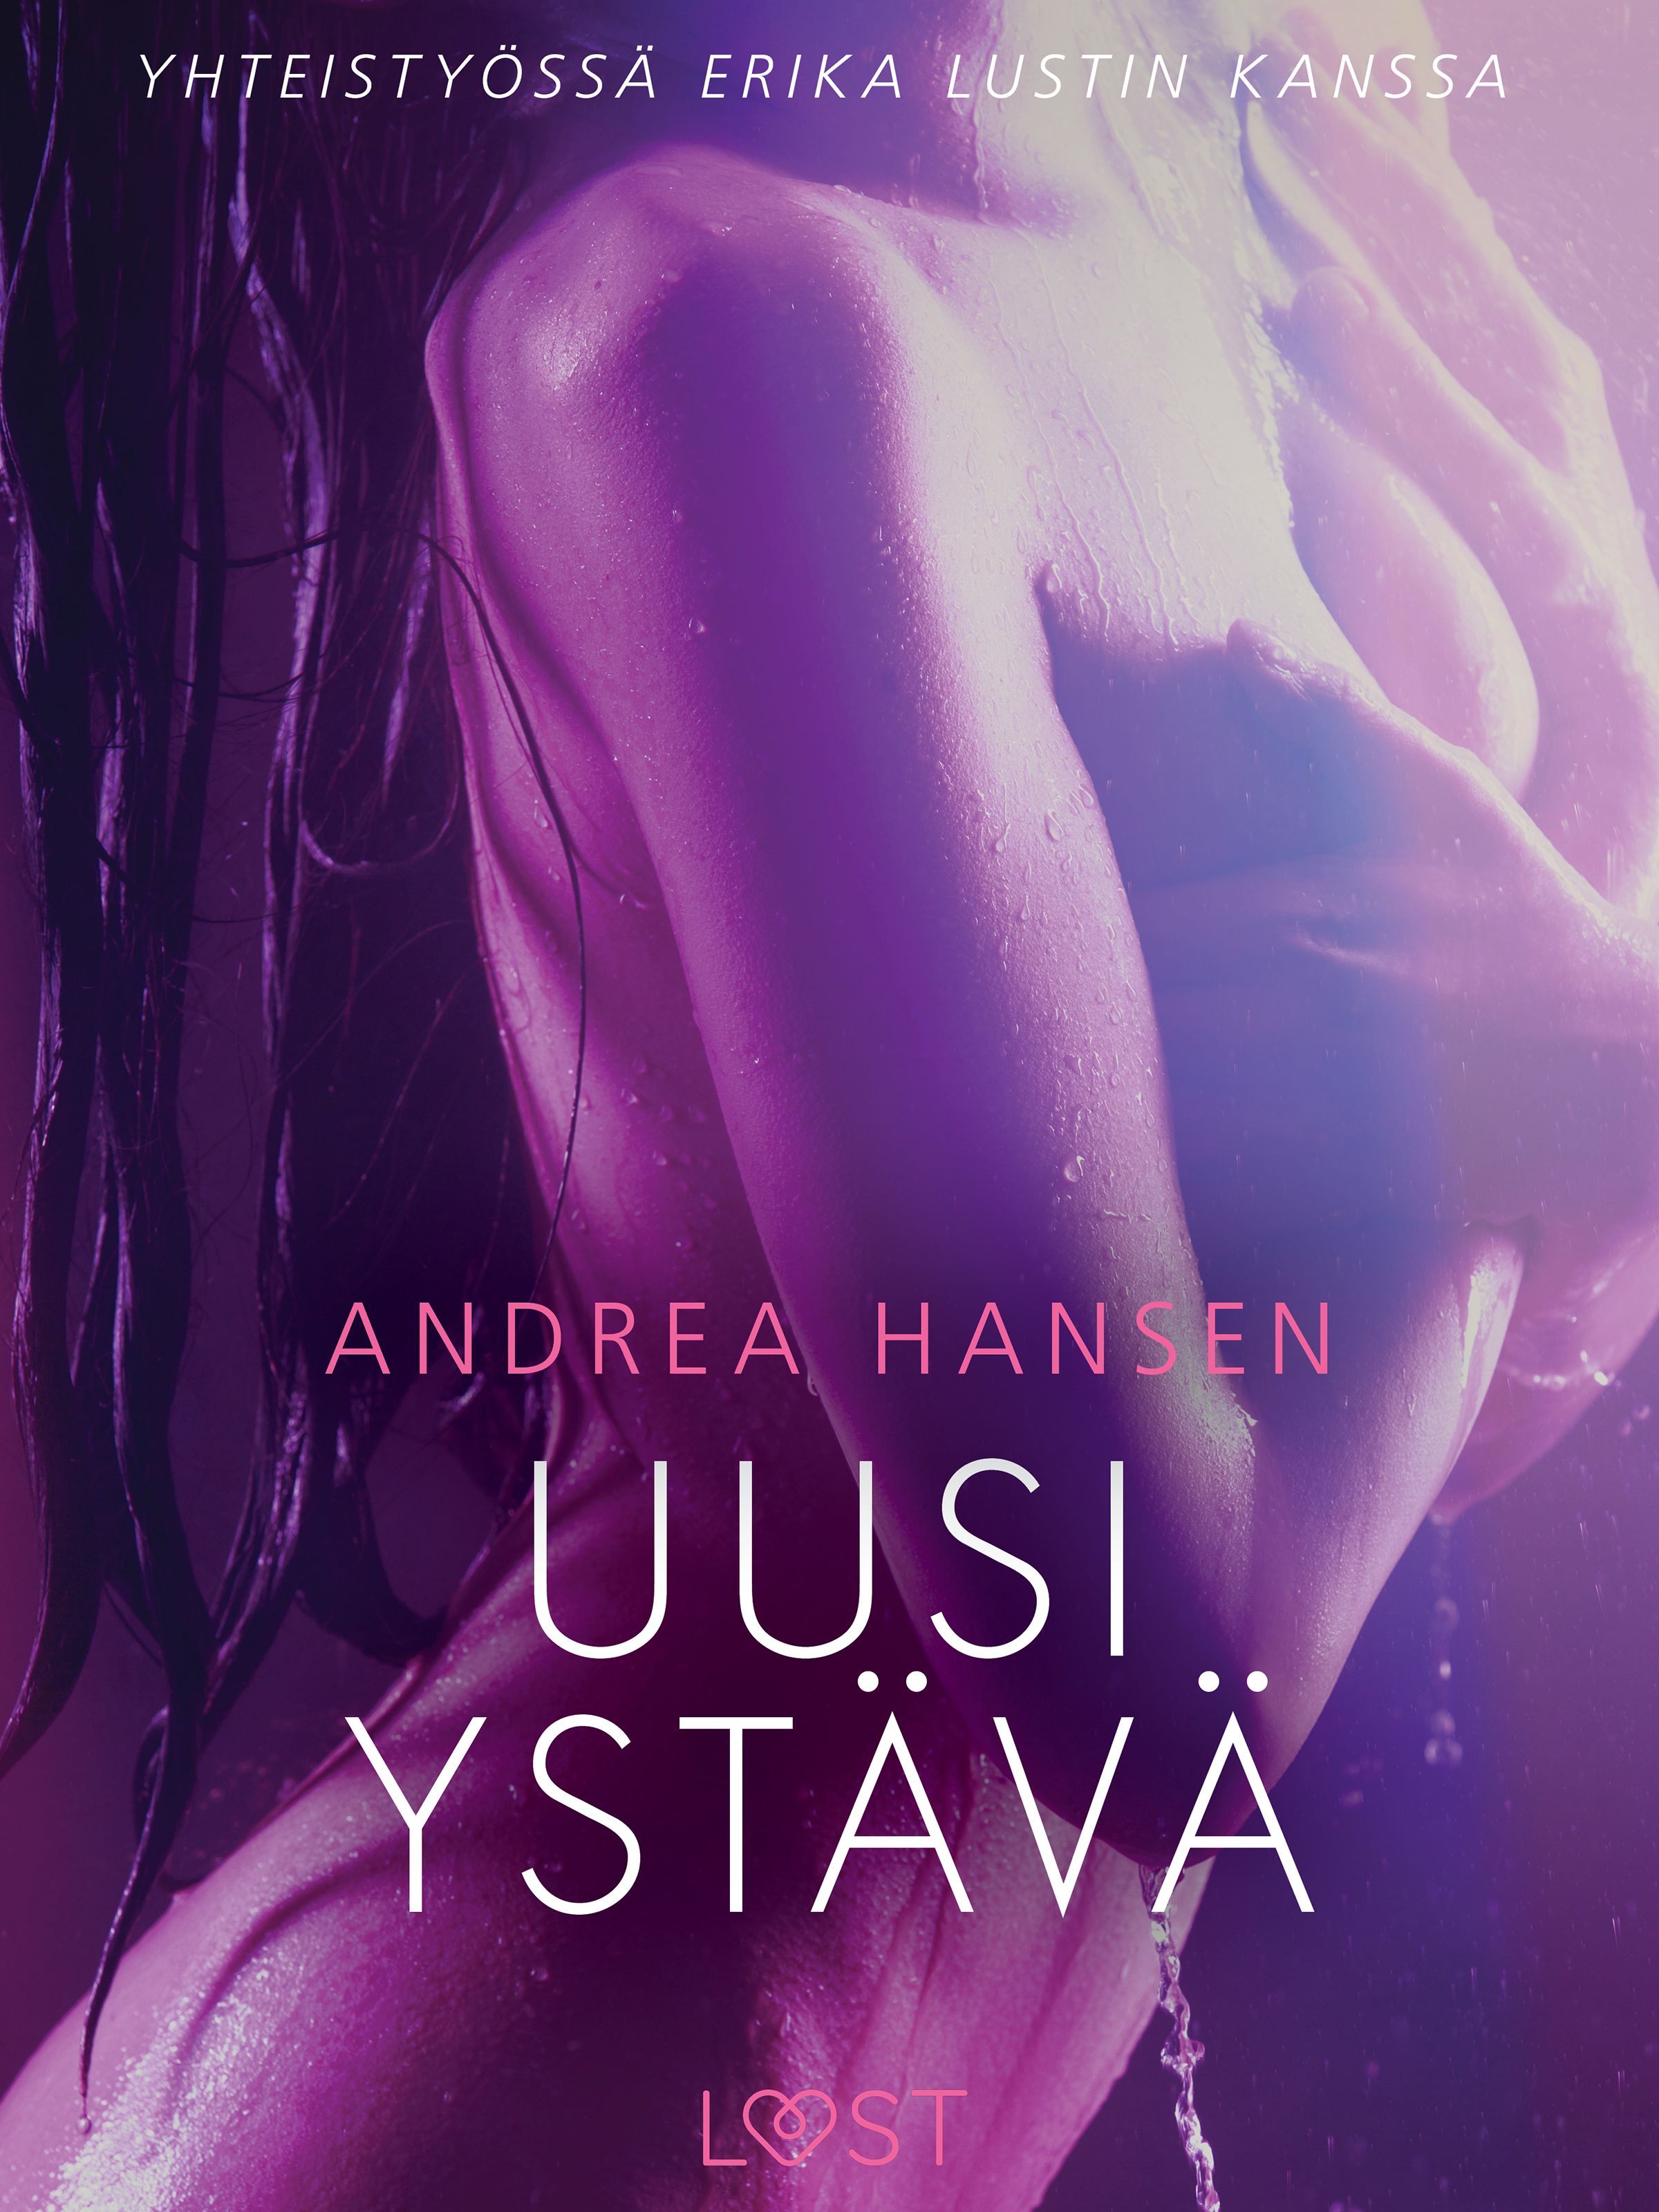 Uusi ystävä – eroottinen novelli, e-bok av Andrea Hansen